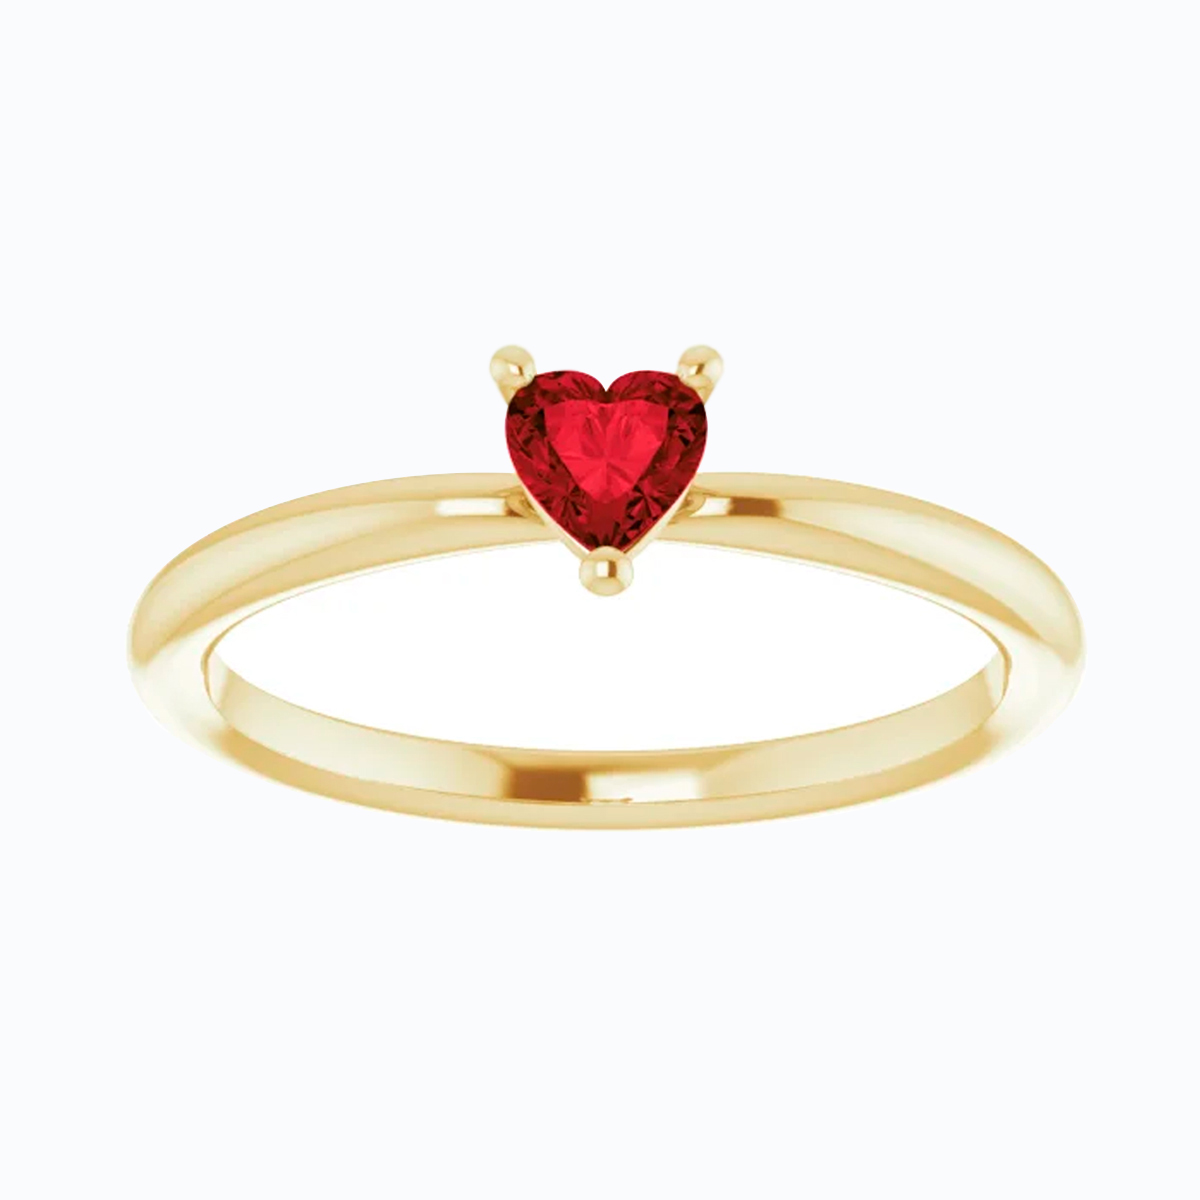 Natural Mozambique Garnet Heart Ring, 14k Yellow Gold